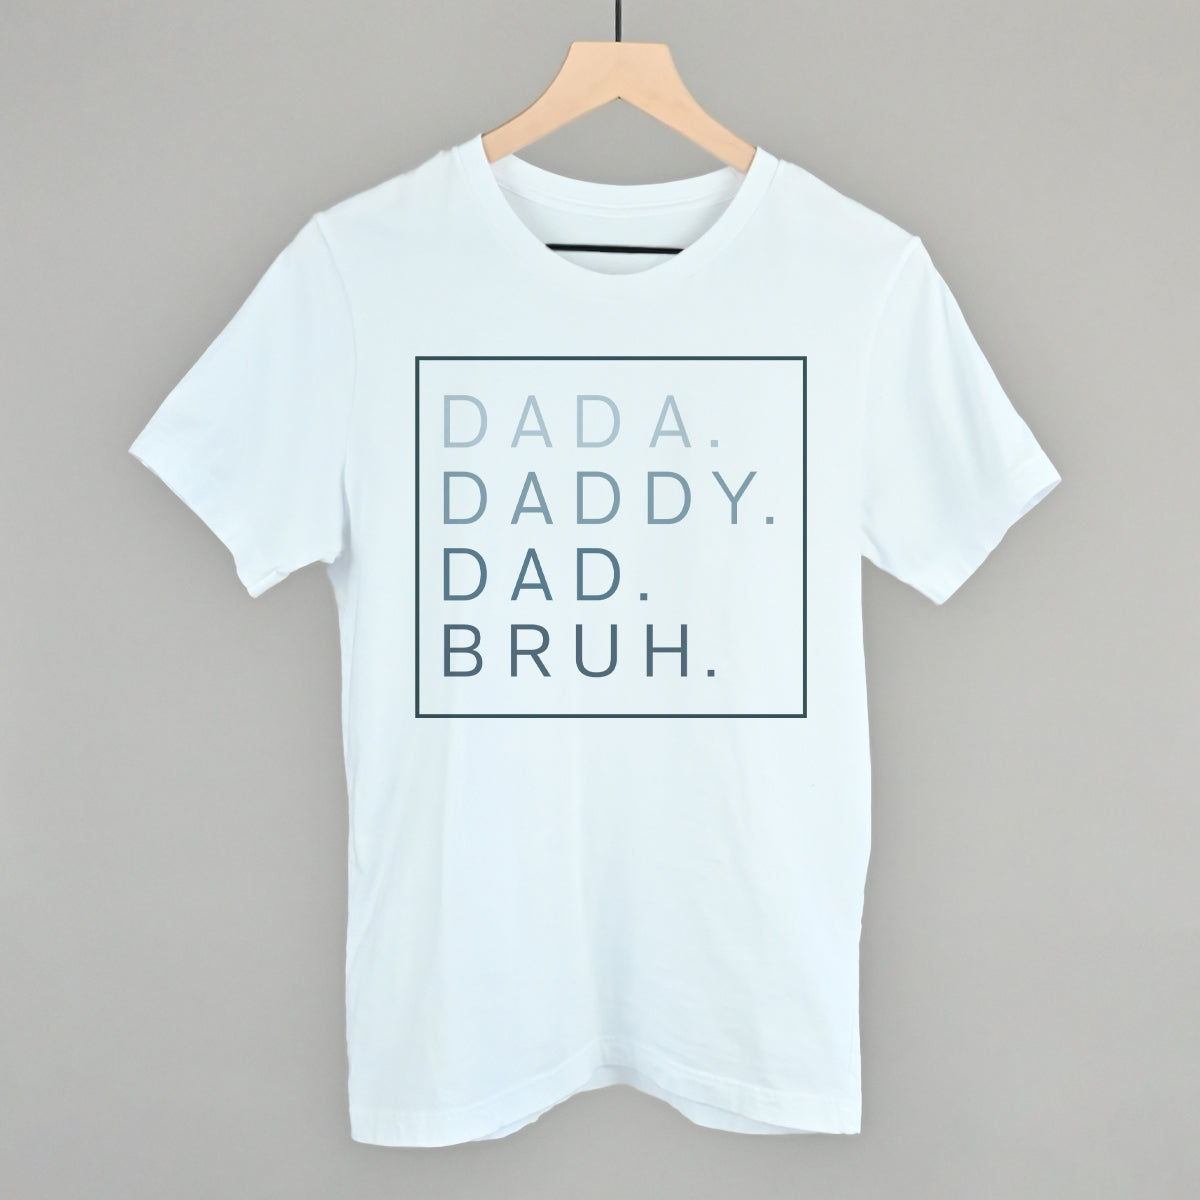 Dada Daddy Dad Bruh